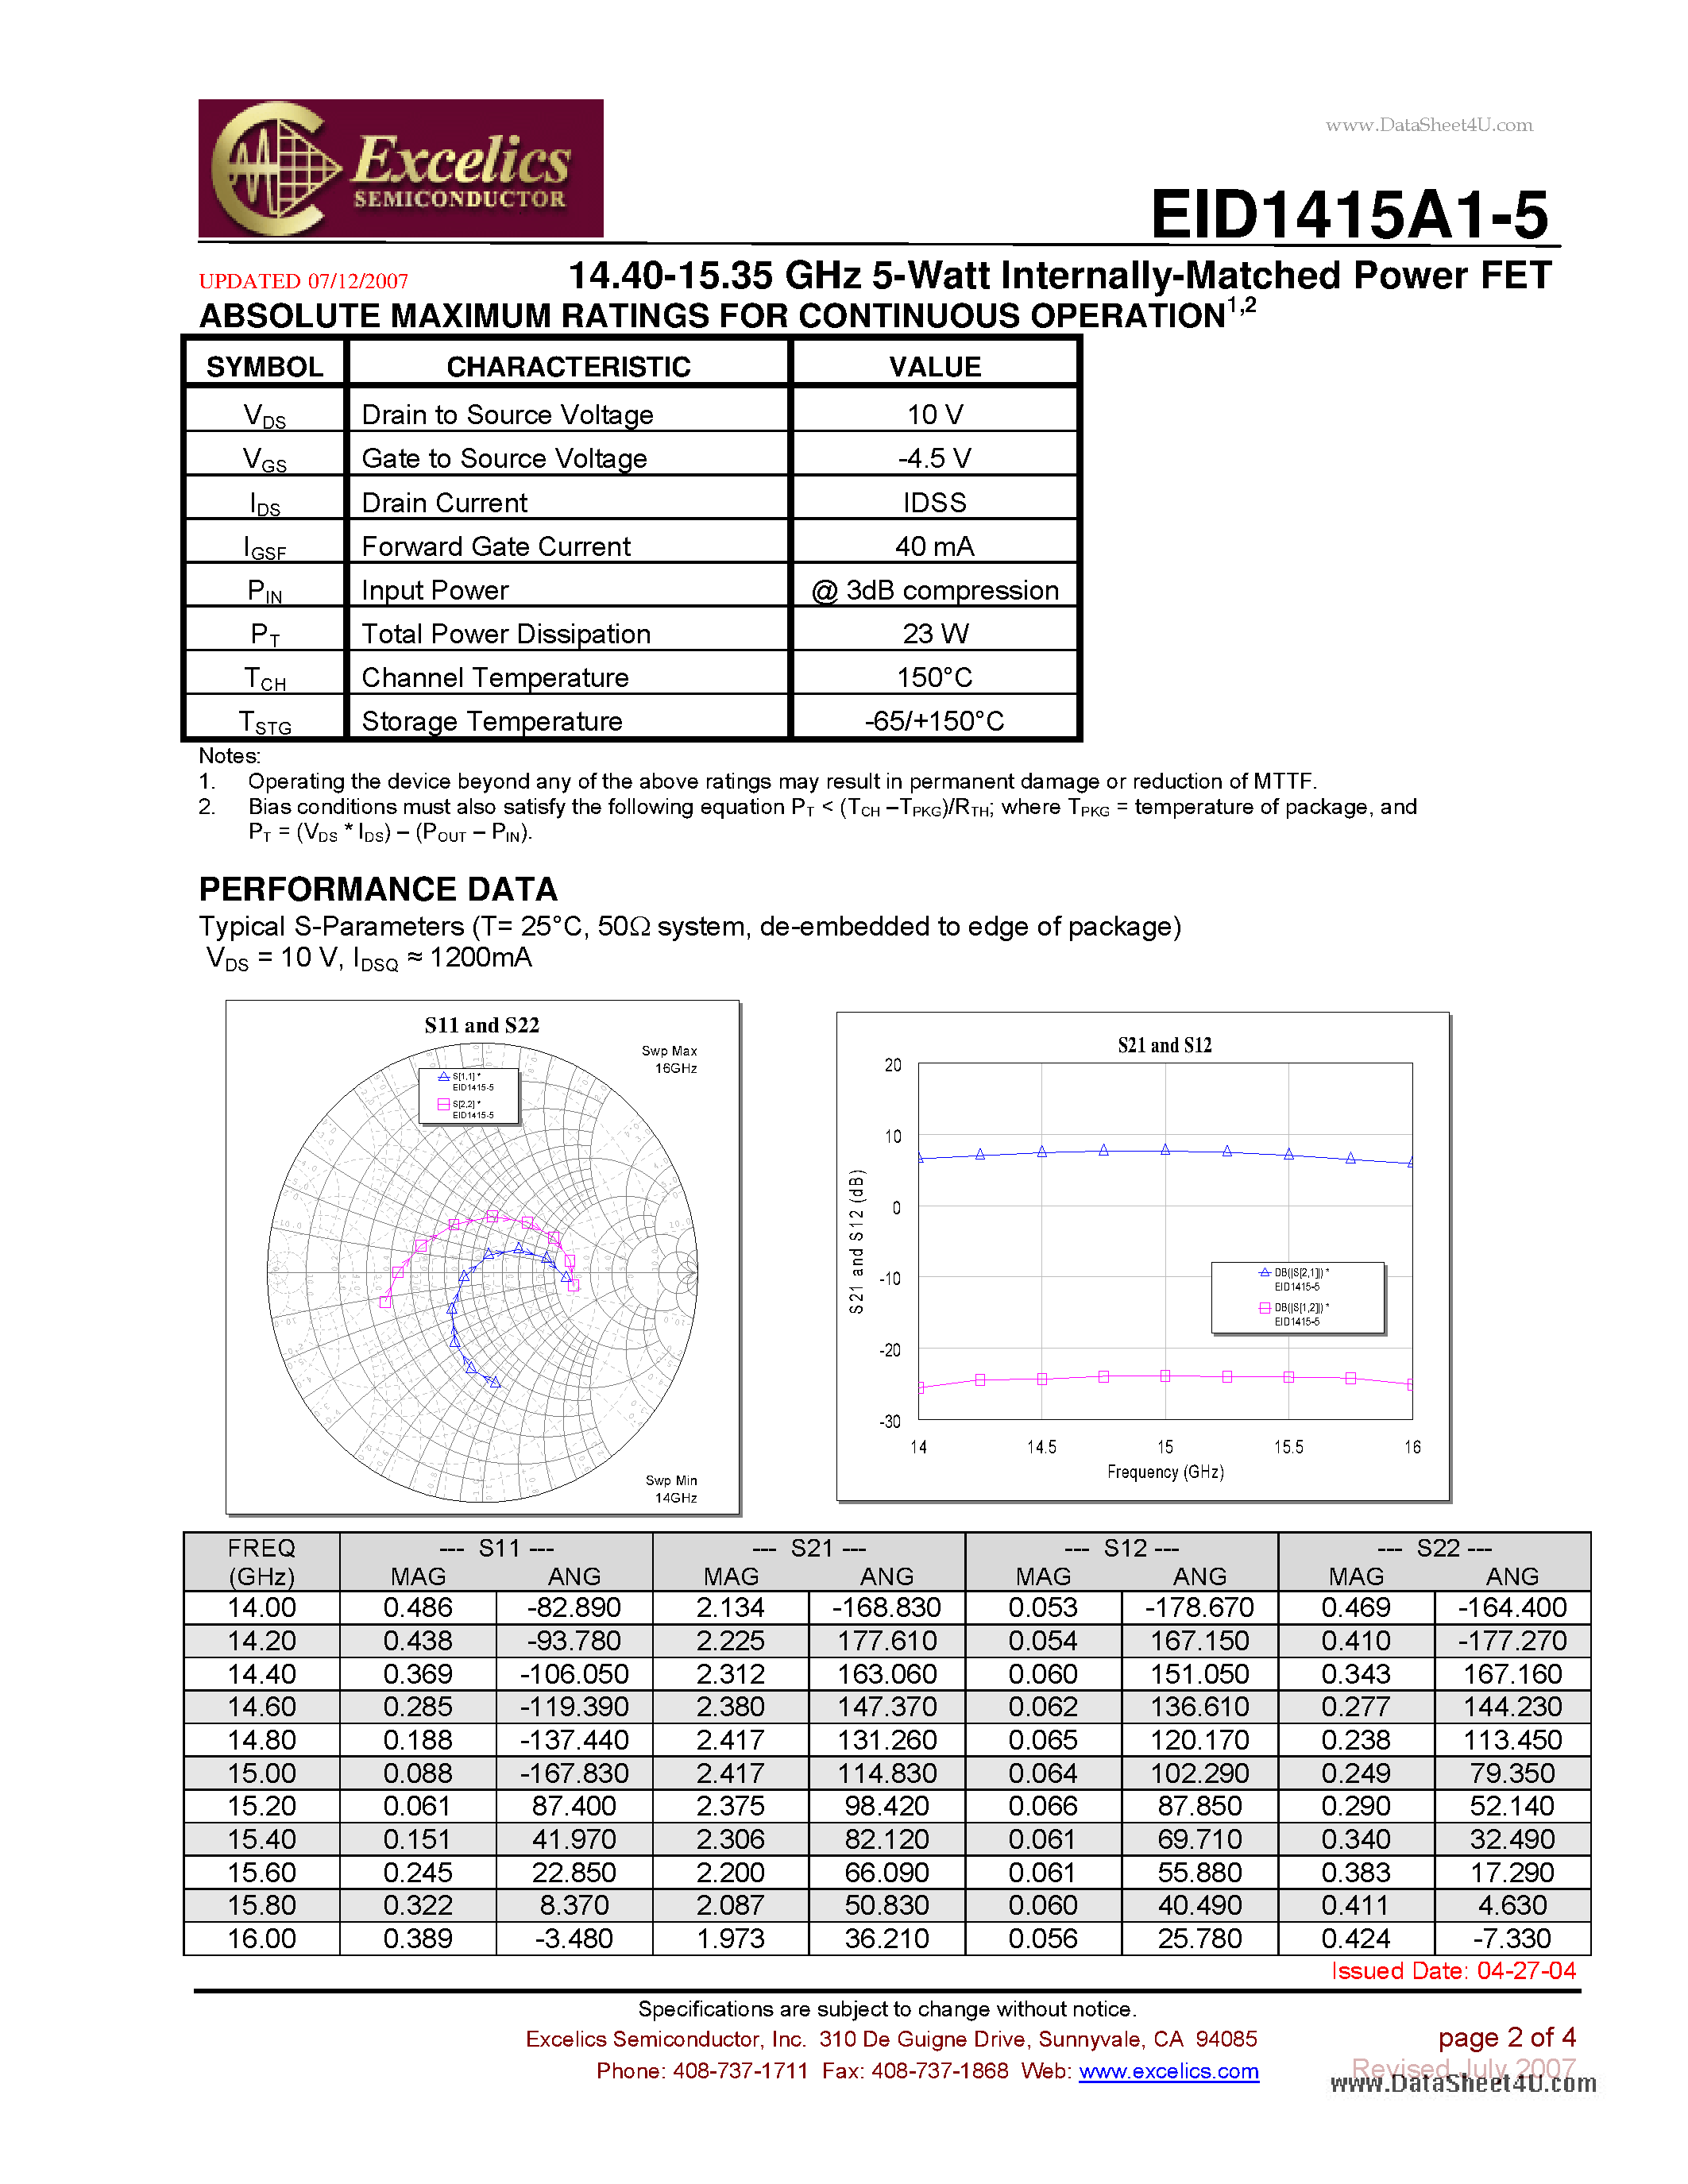 Даташит EID1415A1-5 - 14.40-15.35 GHz 5-Watt Internally-Matched Power FET страница 2